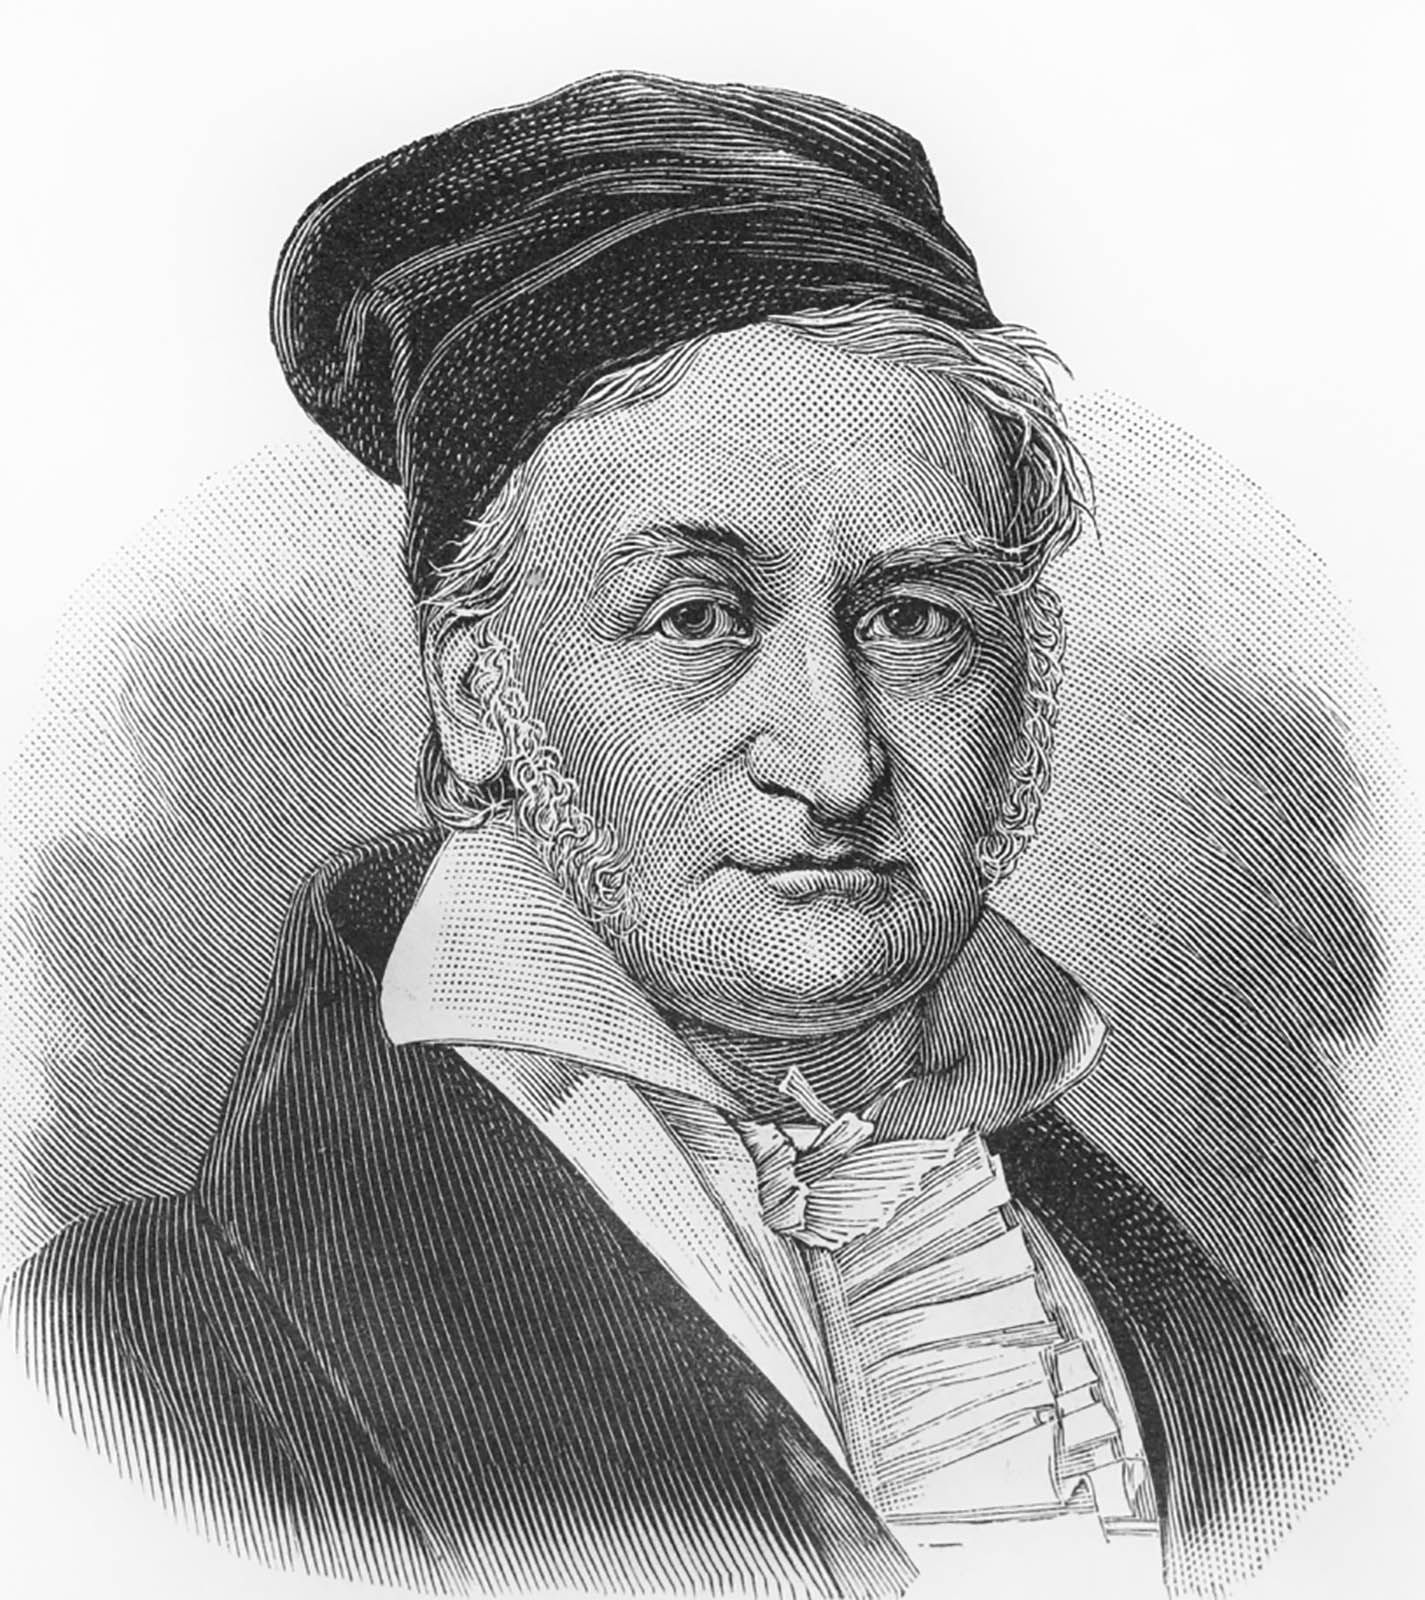  Biografie van Carl Friedrich Gauss